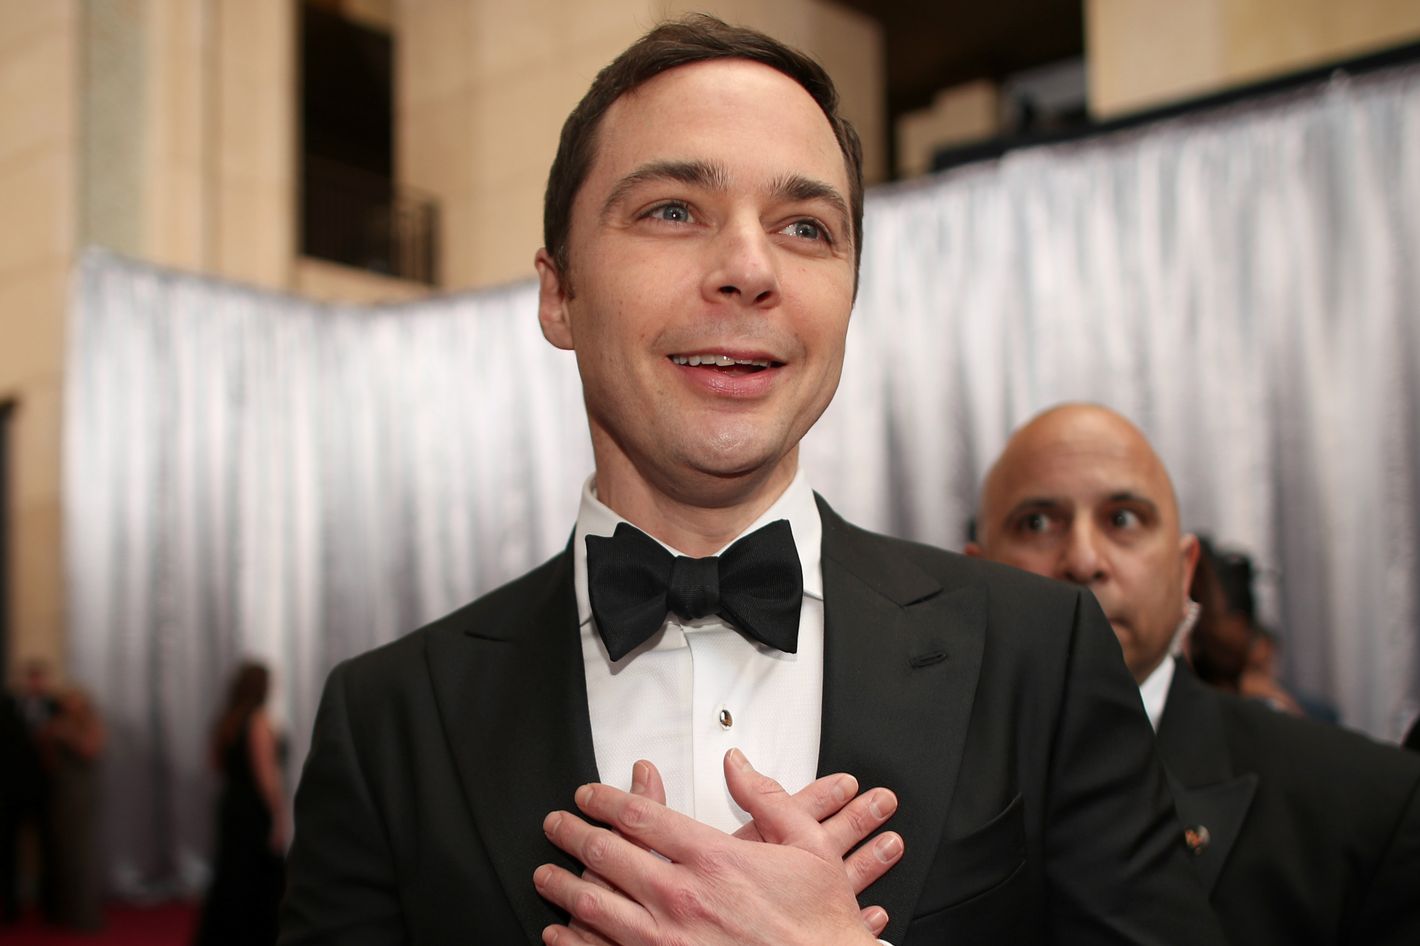 The Big Bang Theory' Spinoff 'Young Sheldon' Ordered at CBS